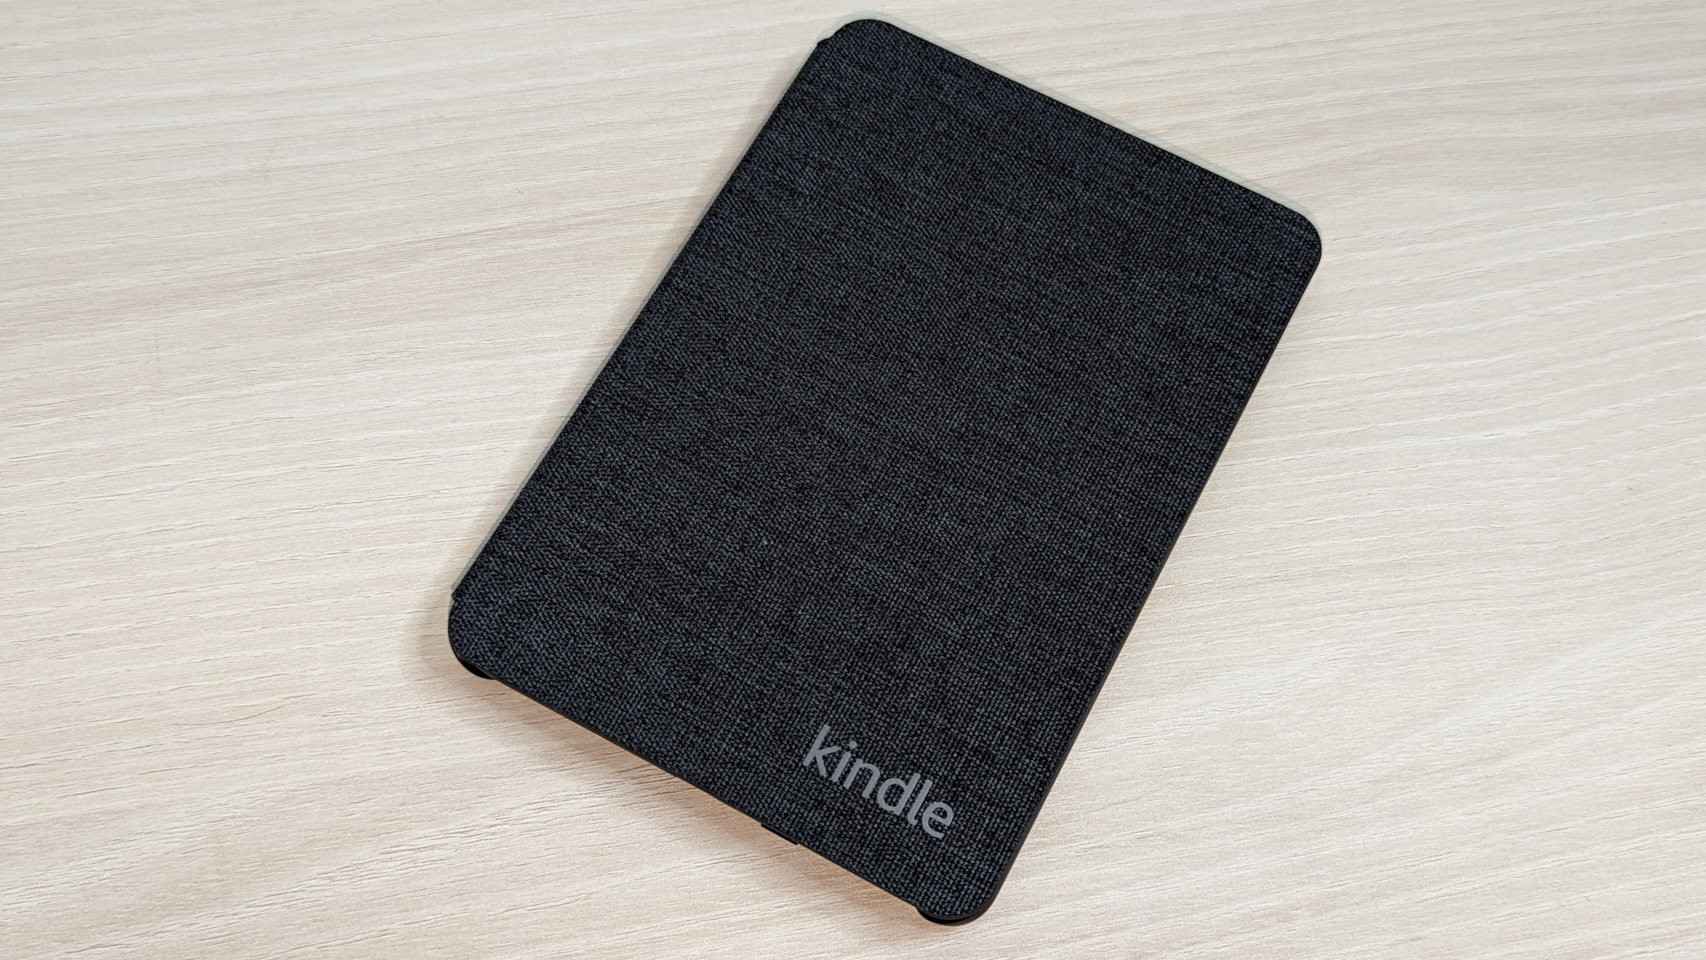 La funda del Kindle es opcional, pero recomendable por su tacto y protección